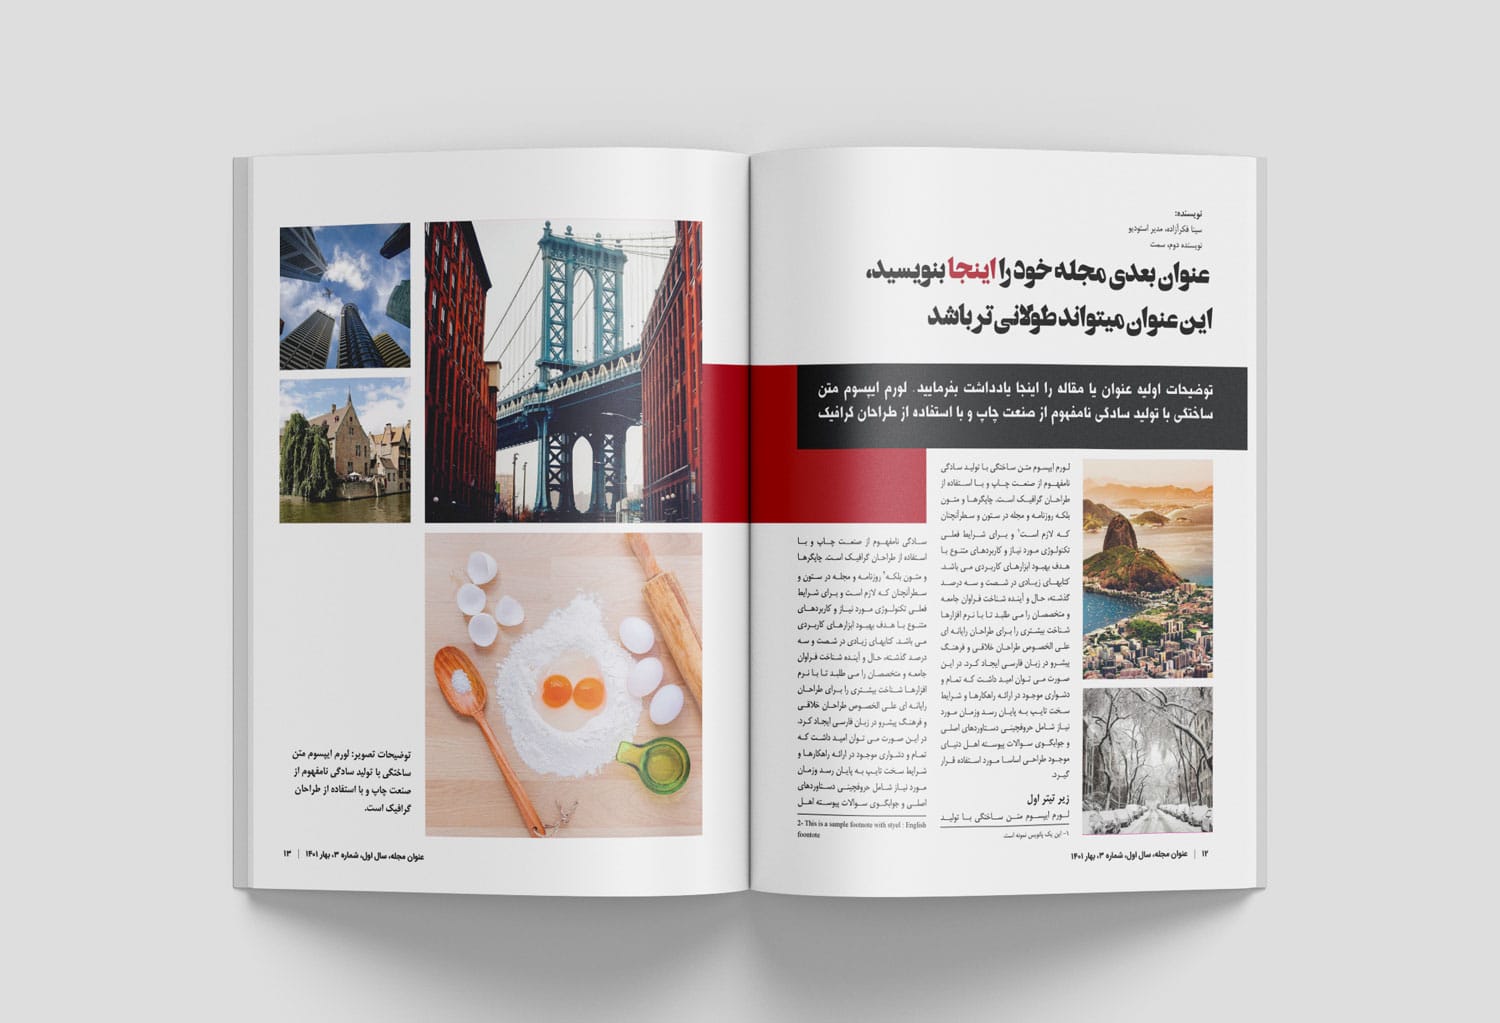 قالب آماده صفحه آرایی و طراحی مجله ایرانی ورزشی و نشریه الکترونیکی فارسی با ایندیزاین